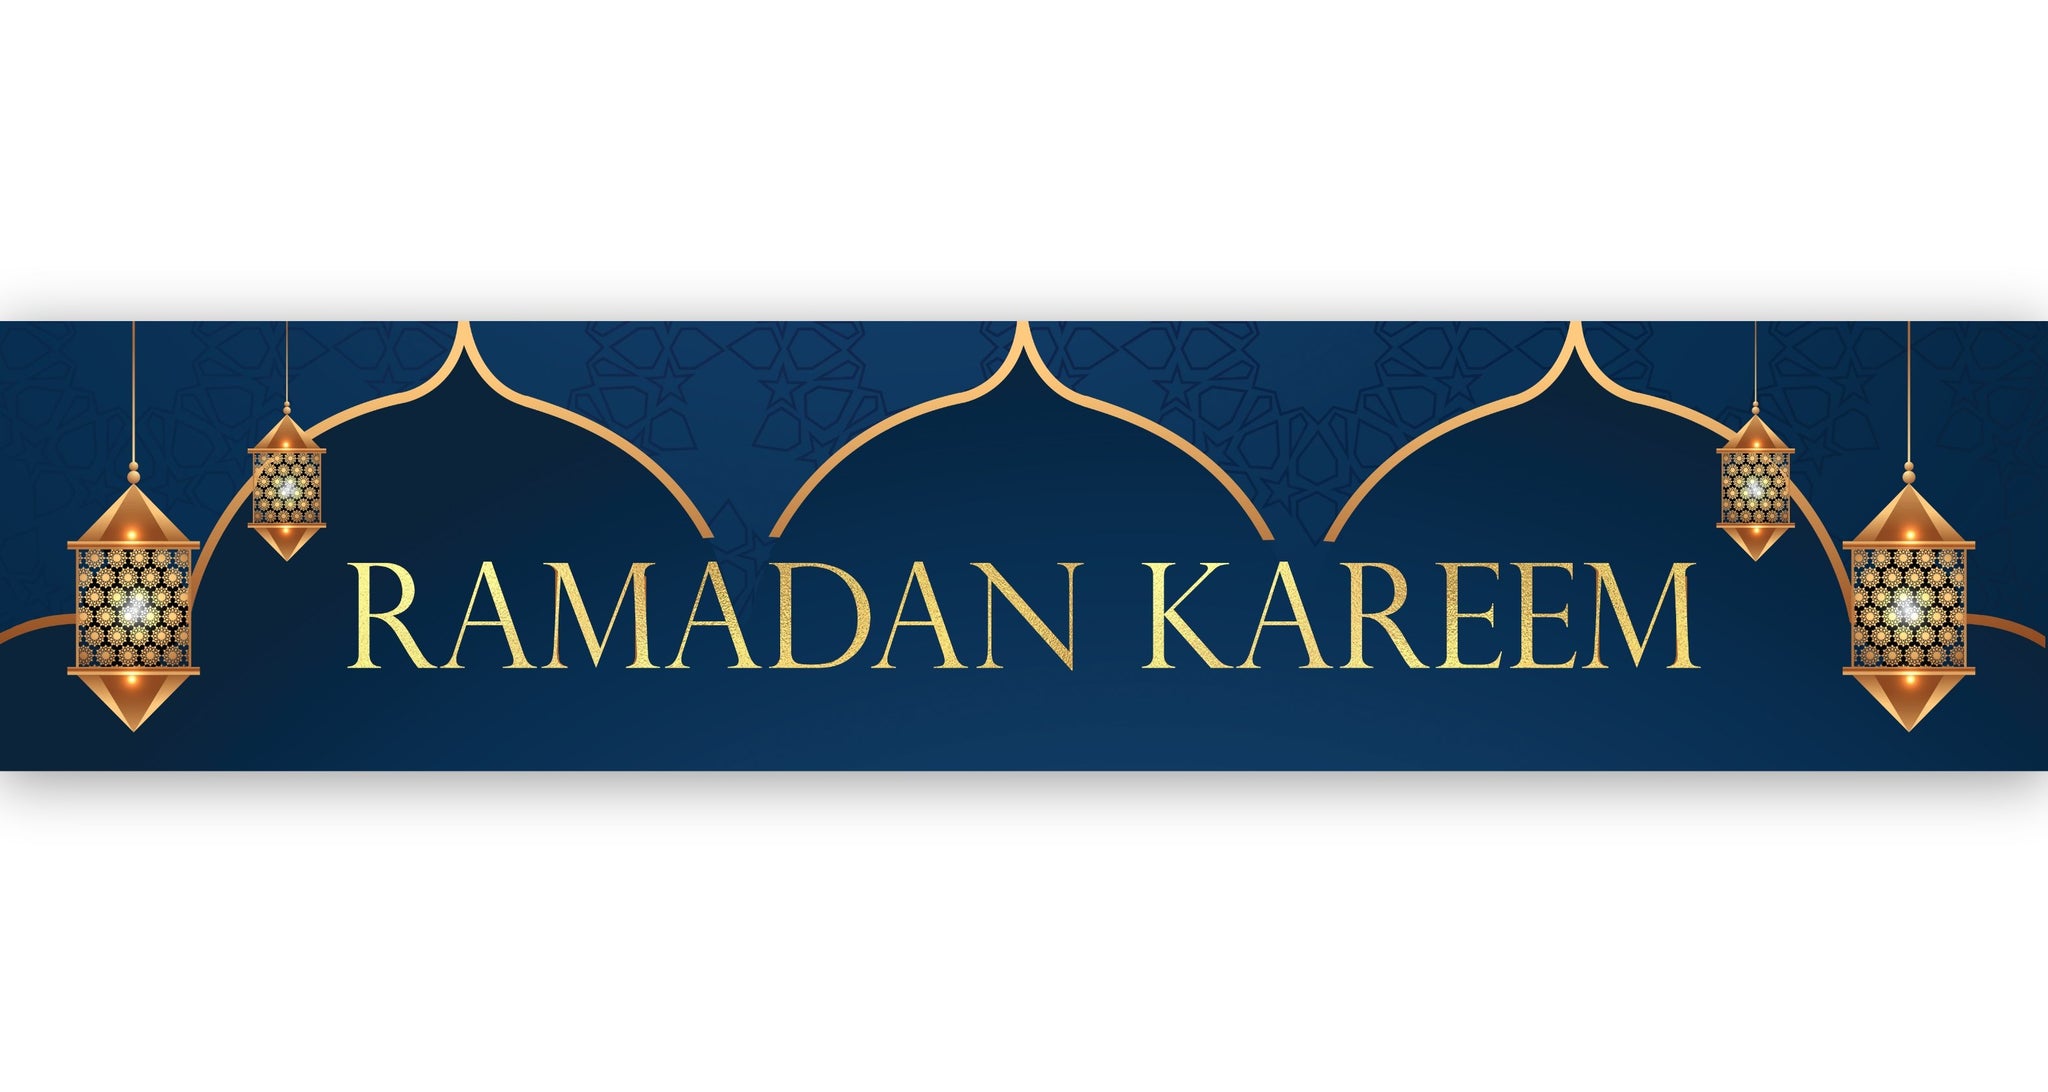 Ramadan Kareem Banner - Navy & Gold Domes & Lanterns